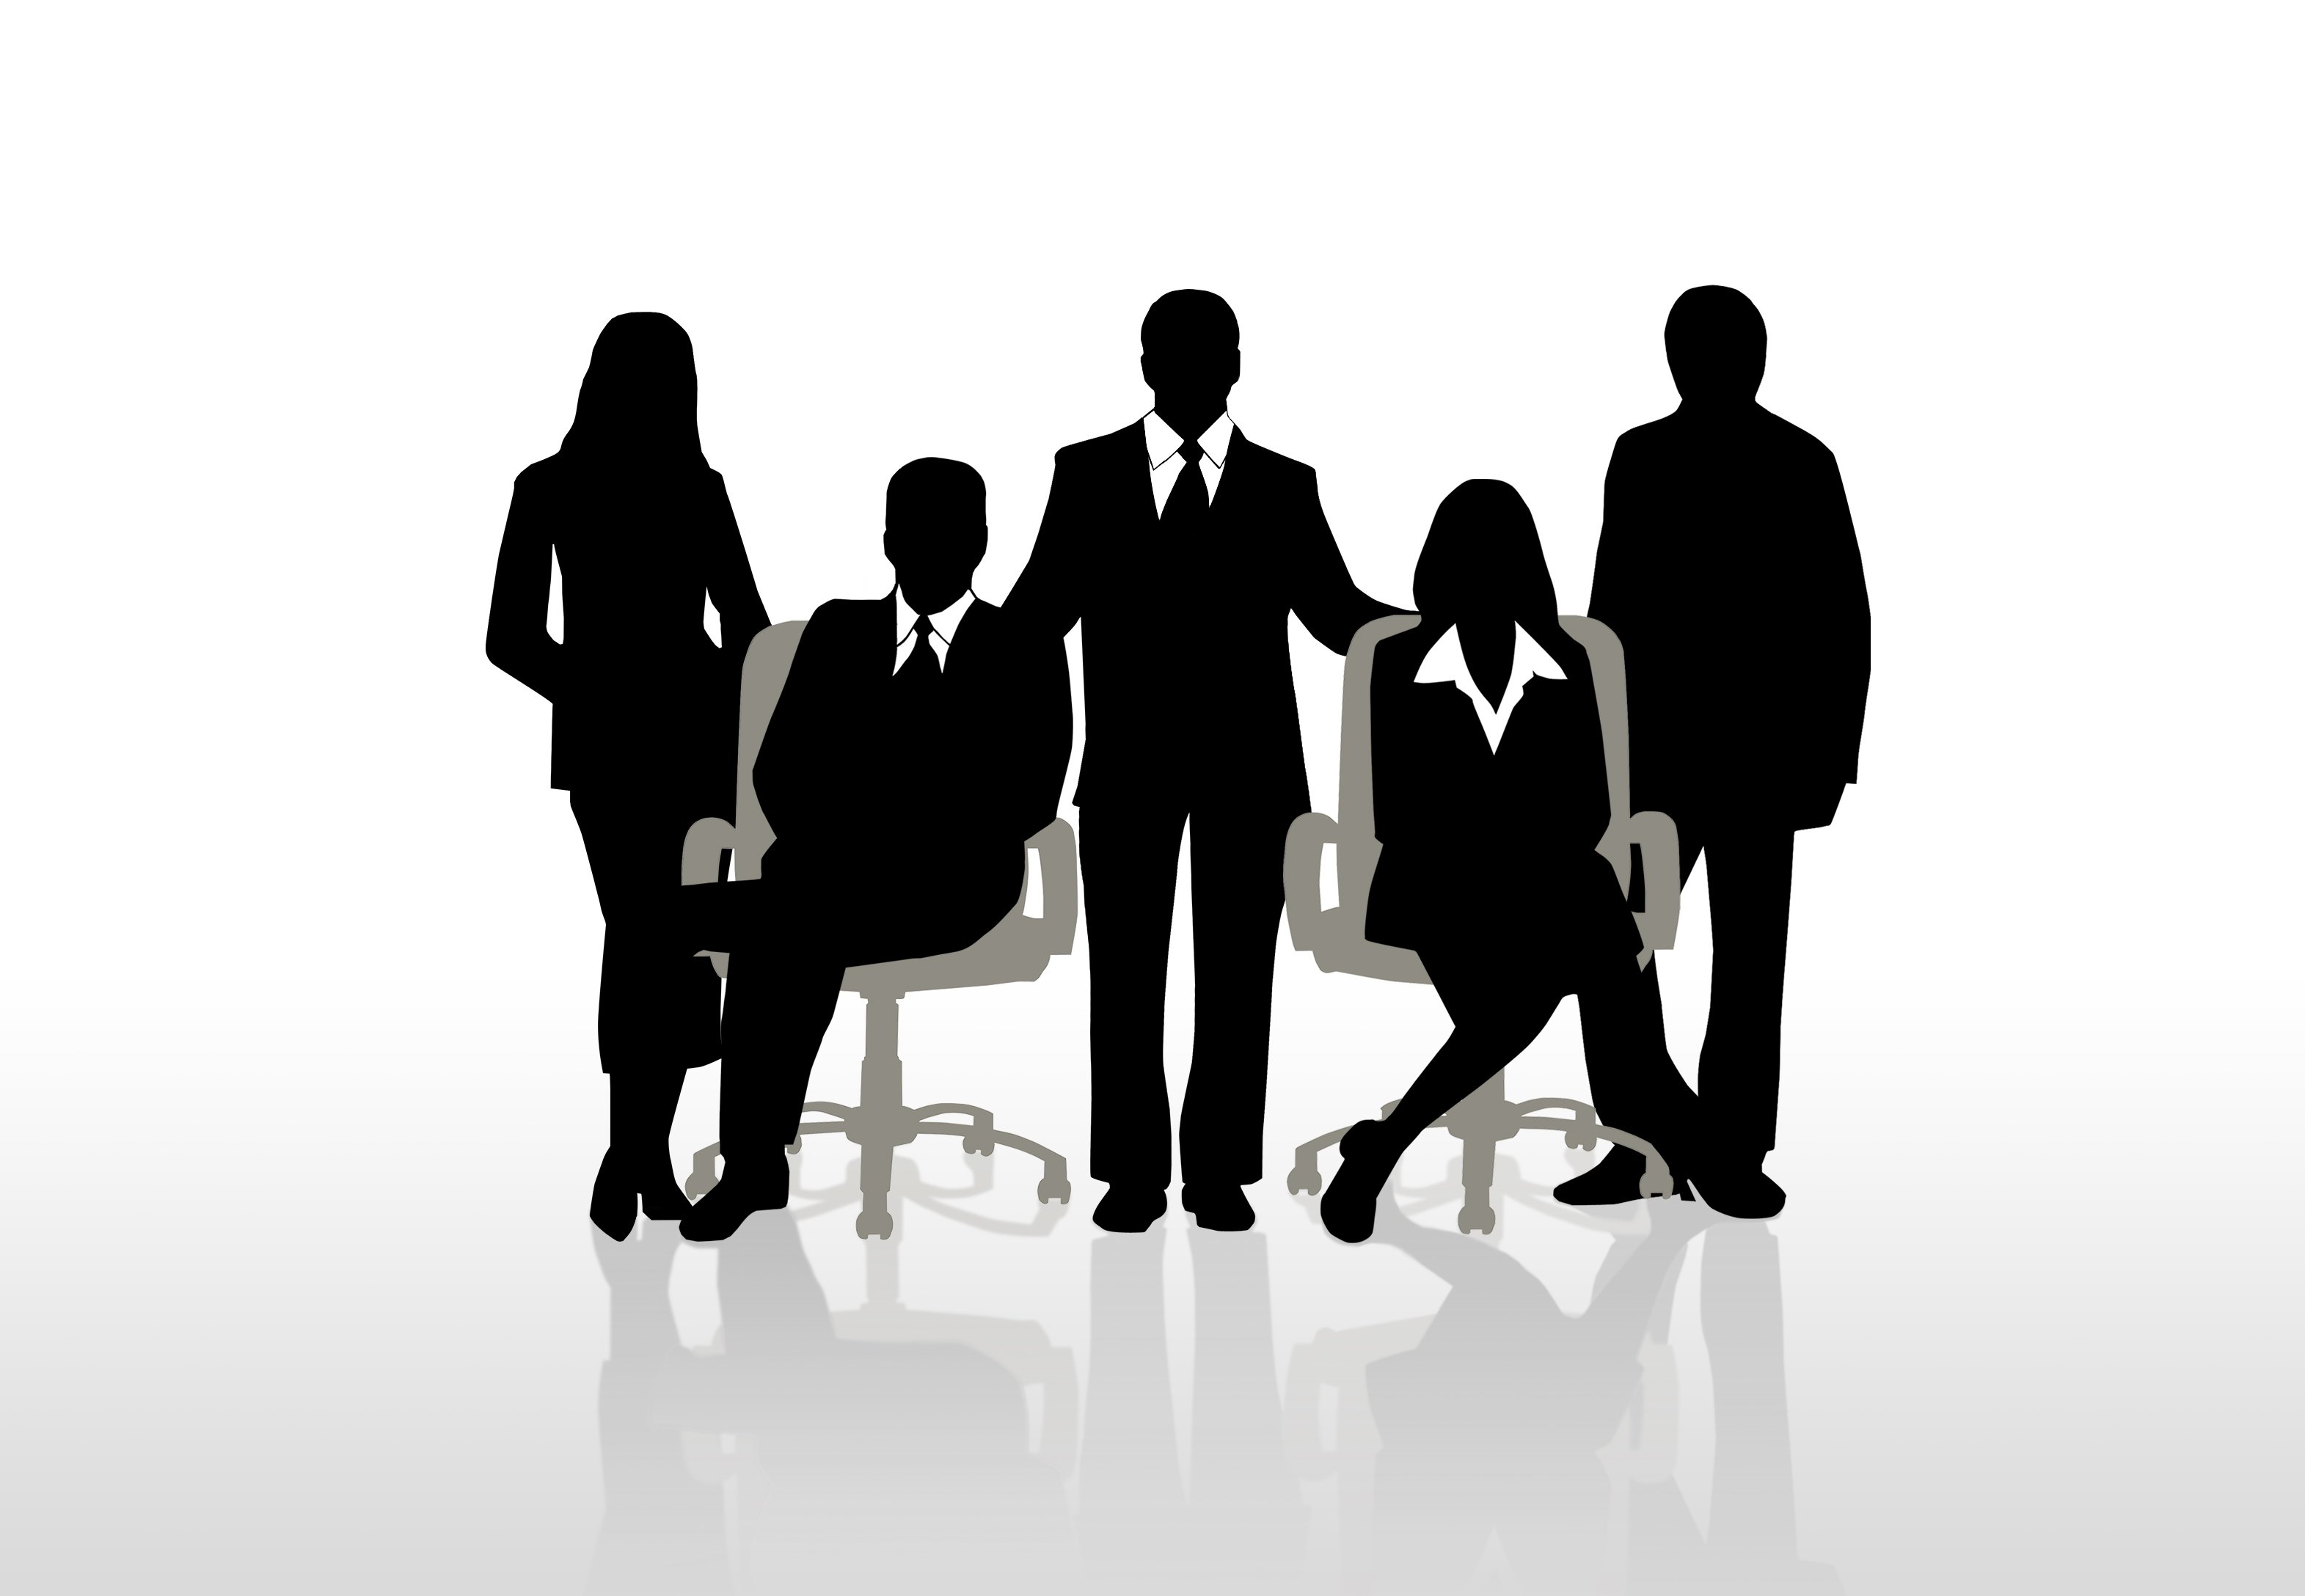 Tiêu chuẩn để trở thành thành viên Hội đồng quản trị là gì? – Công ty TNHH Hợp Luật